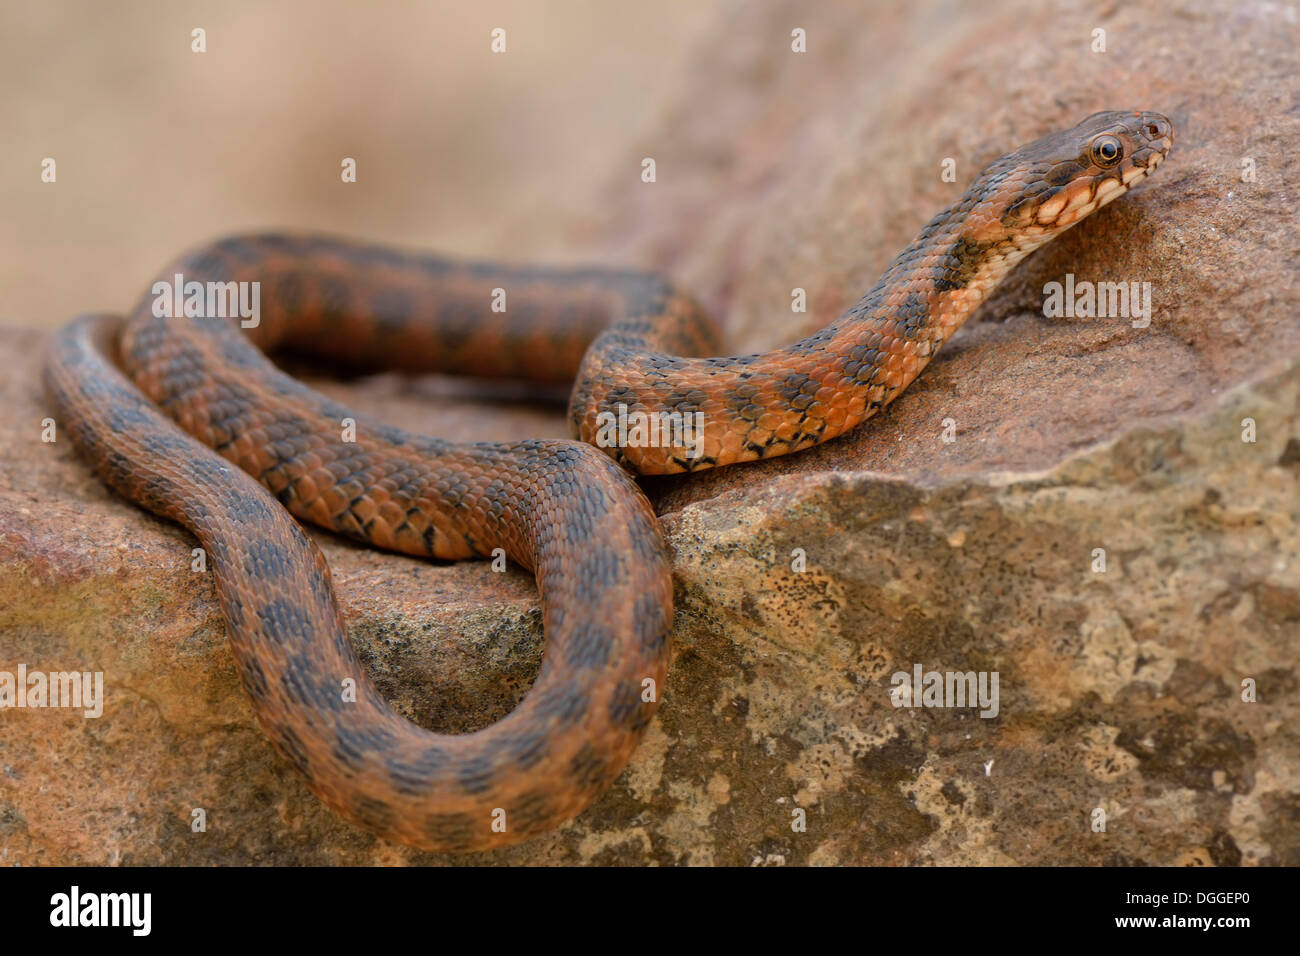 Viperine snake viperine ou serpent d'eau (Natrix maura), se prélassant sur le roc, l'occurrence dans le sud-ouest de l'Europe, l'Algarve, Portugal Banque D'Images